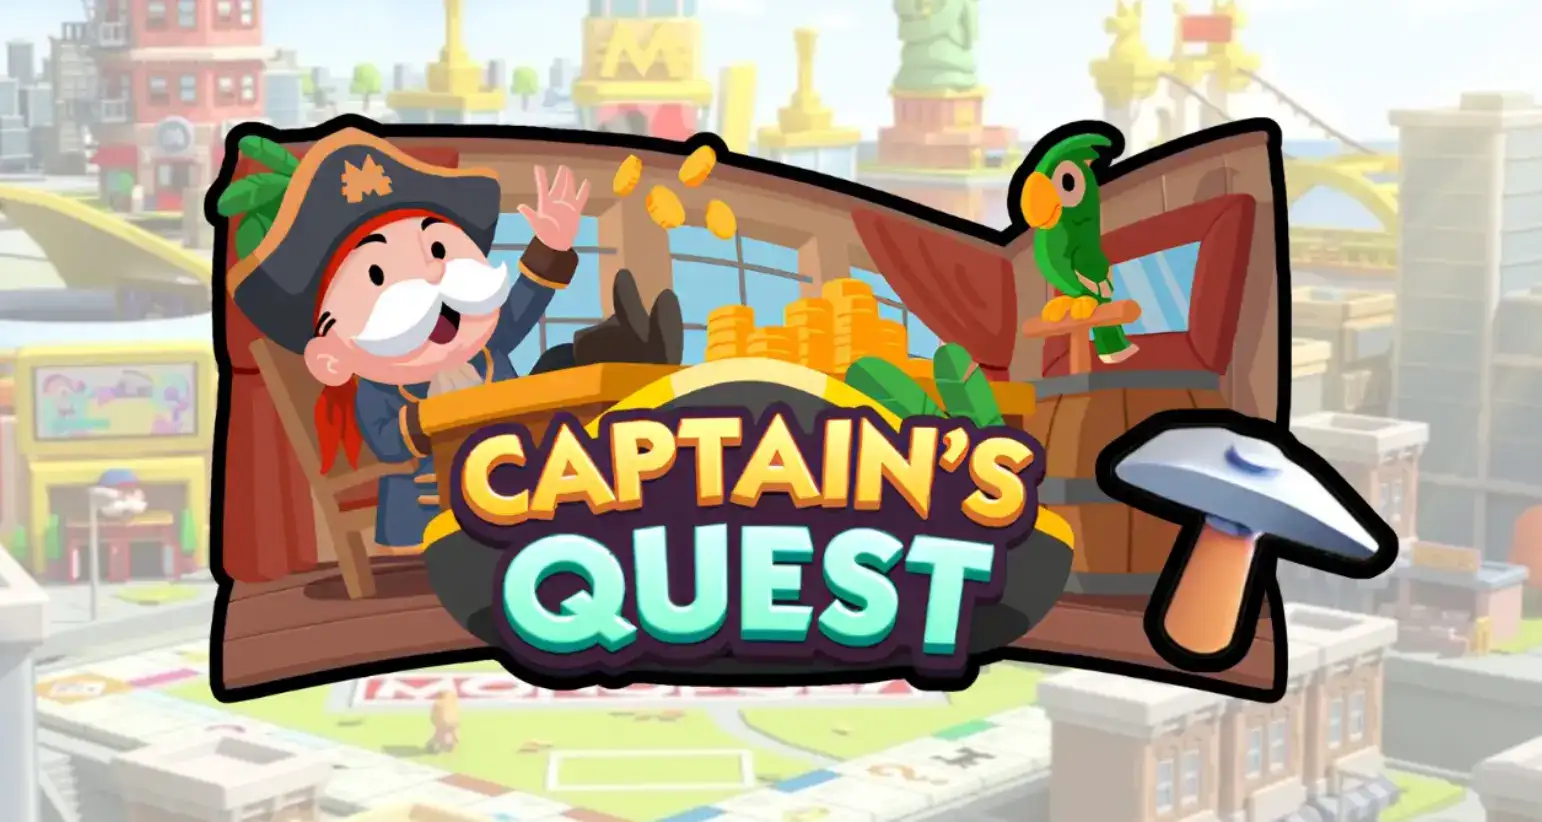 captain's quest rewards and milestones